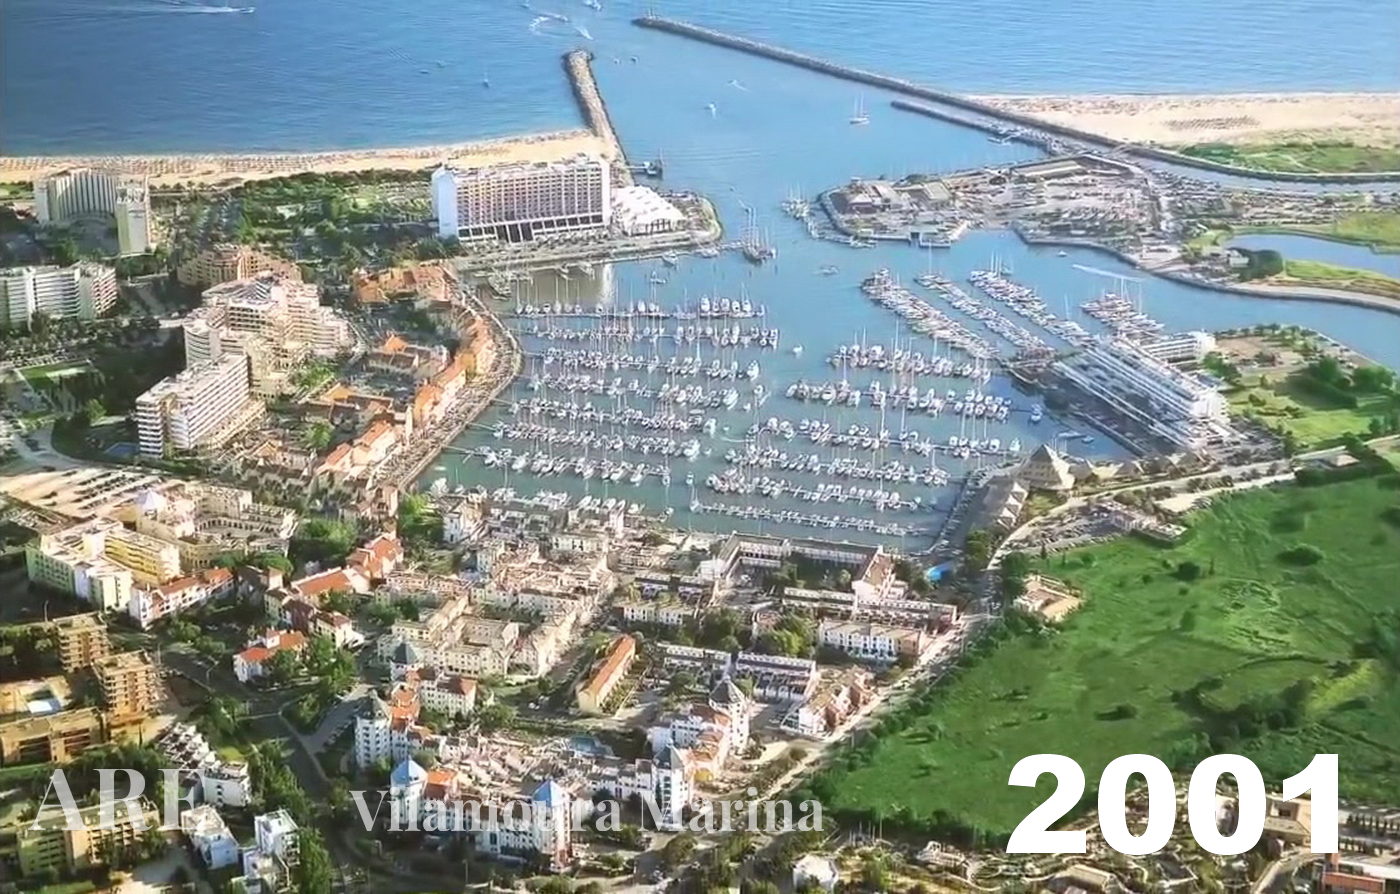 Uma vista aérea da Marina de Vilamoura tirada em 2001.